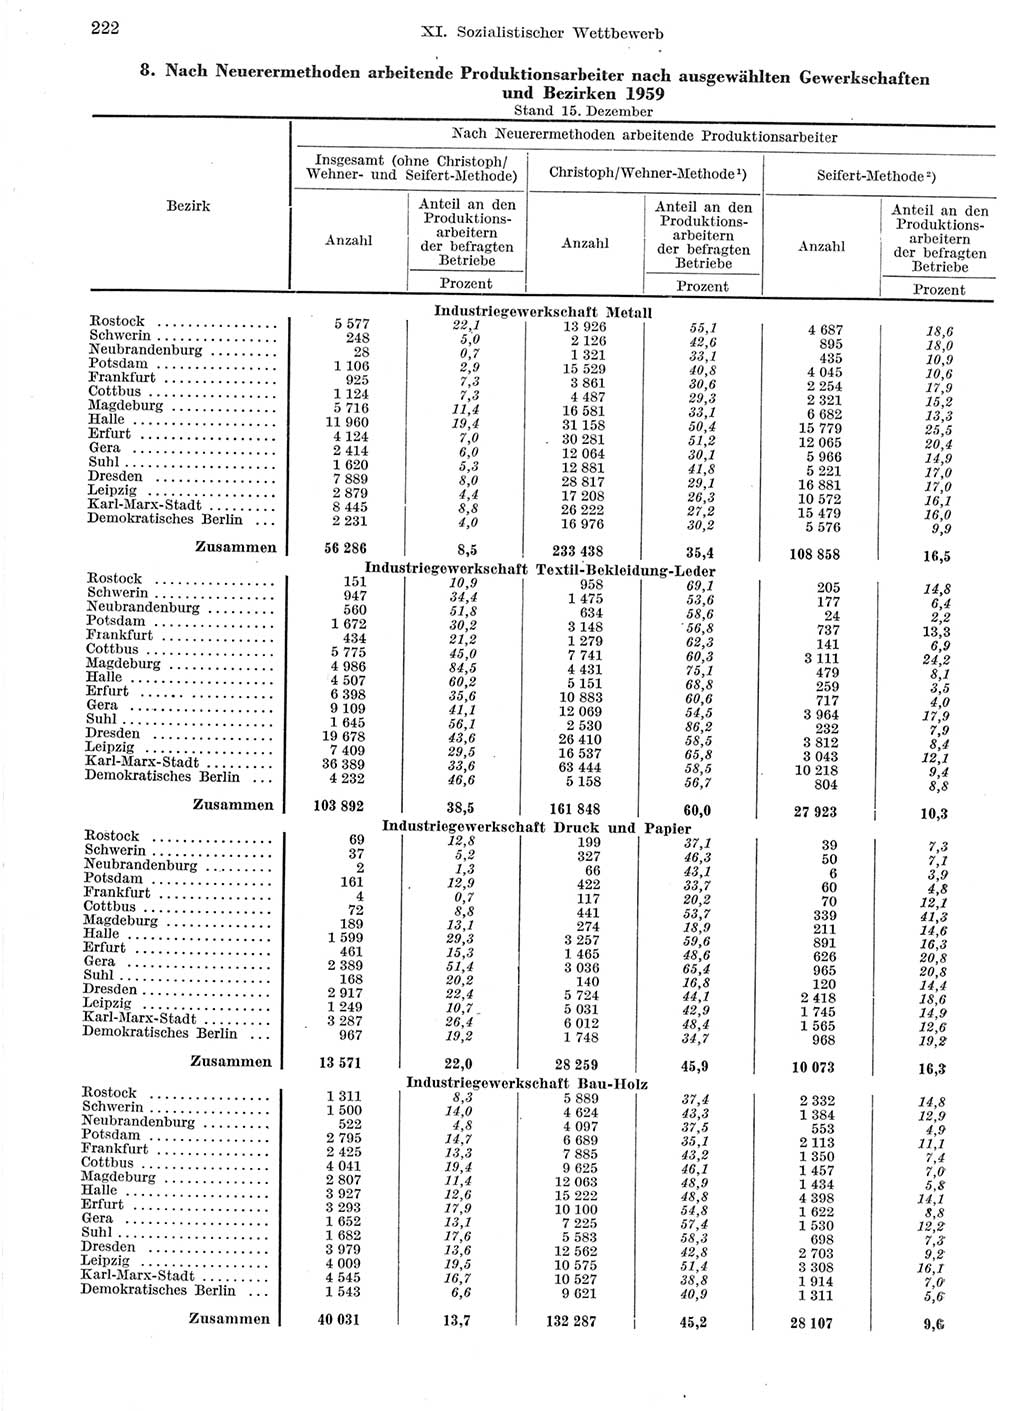 Statistisches Jahrbuch der Deutschen Demokratischen Republik (DDR) 1959, Seite 222 (Stat. Jb. DDR 1959, S. 222)